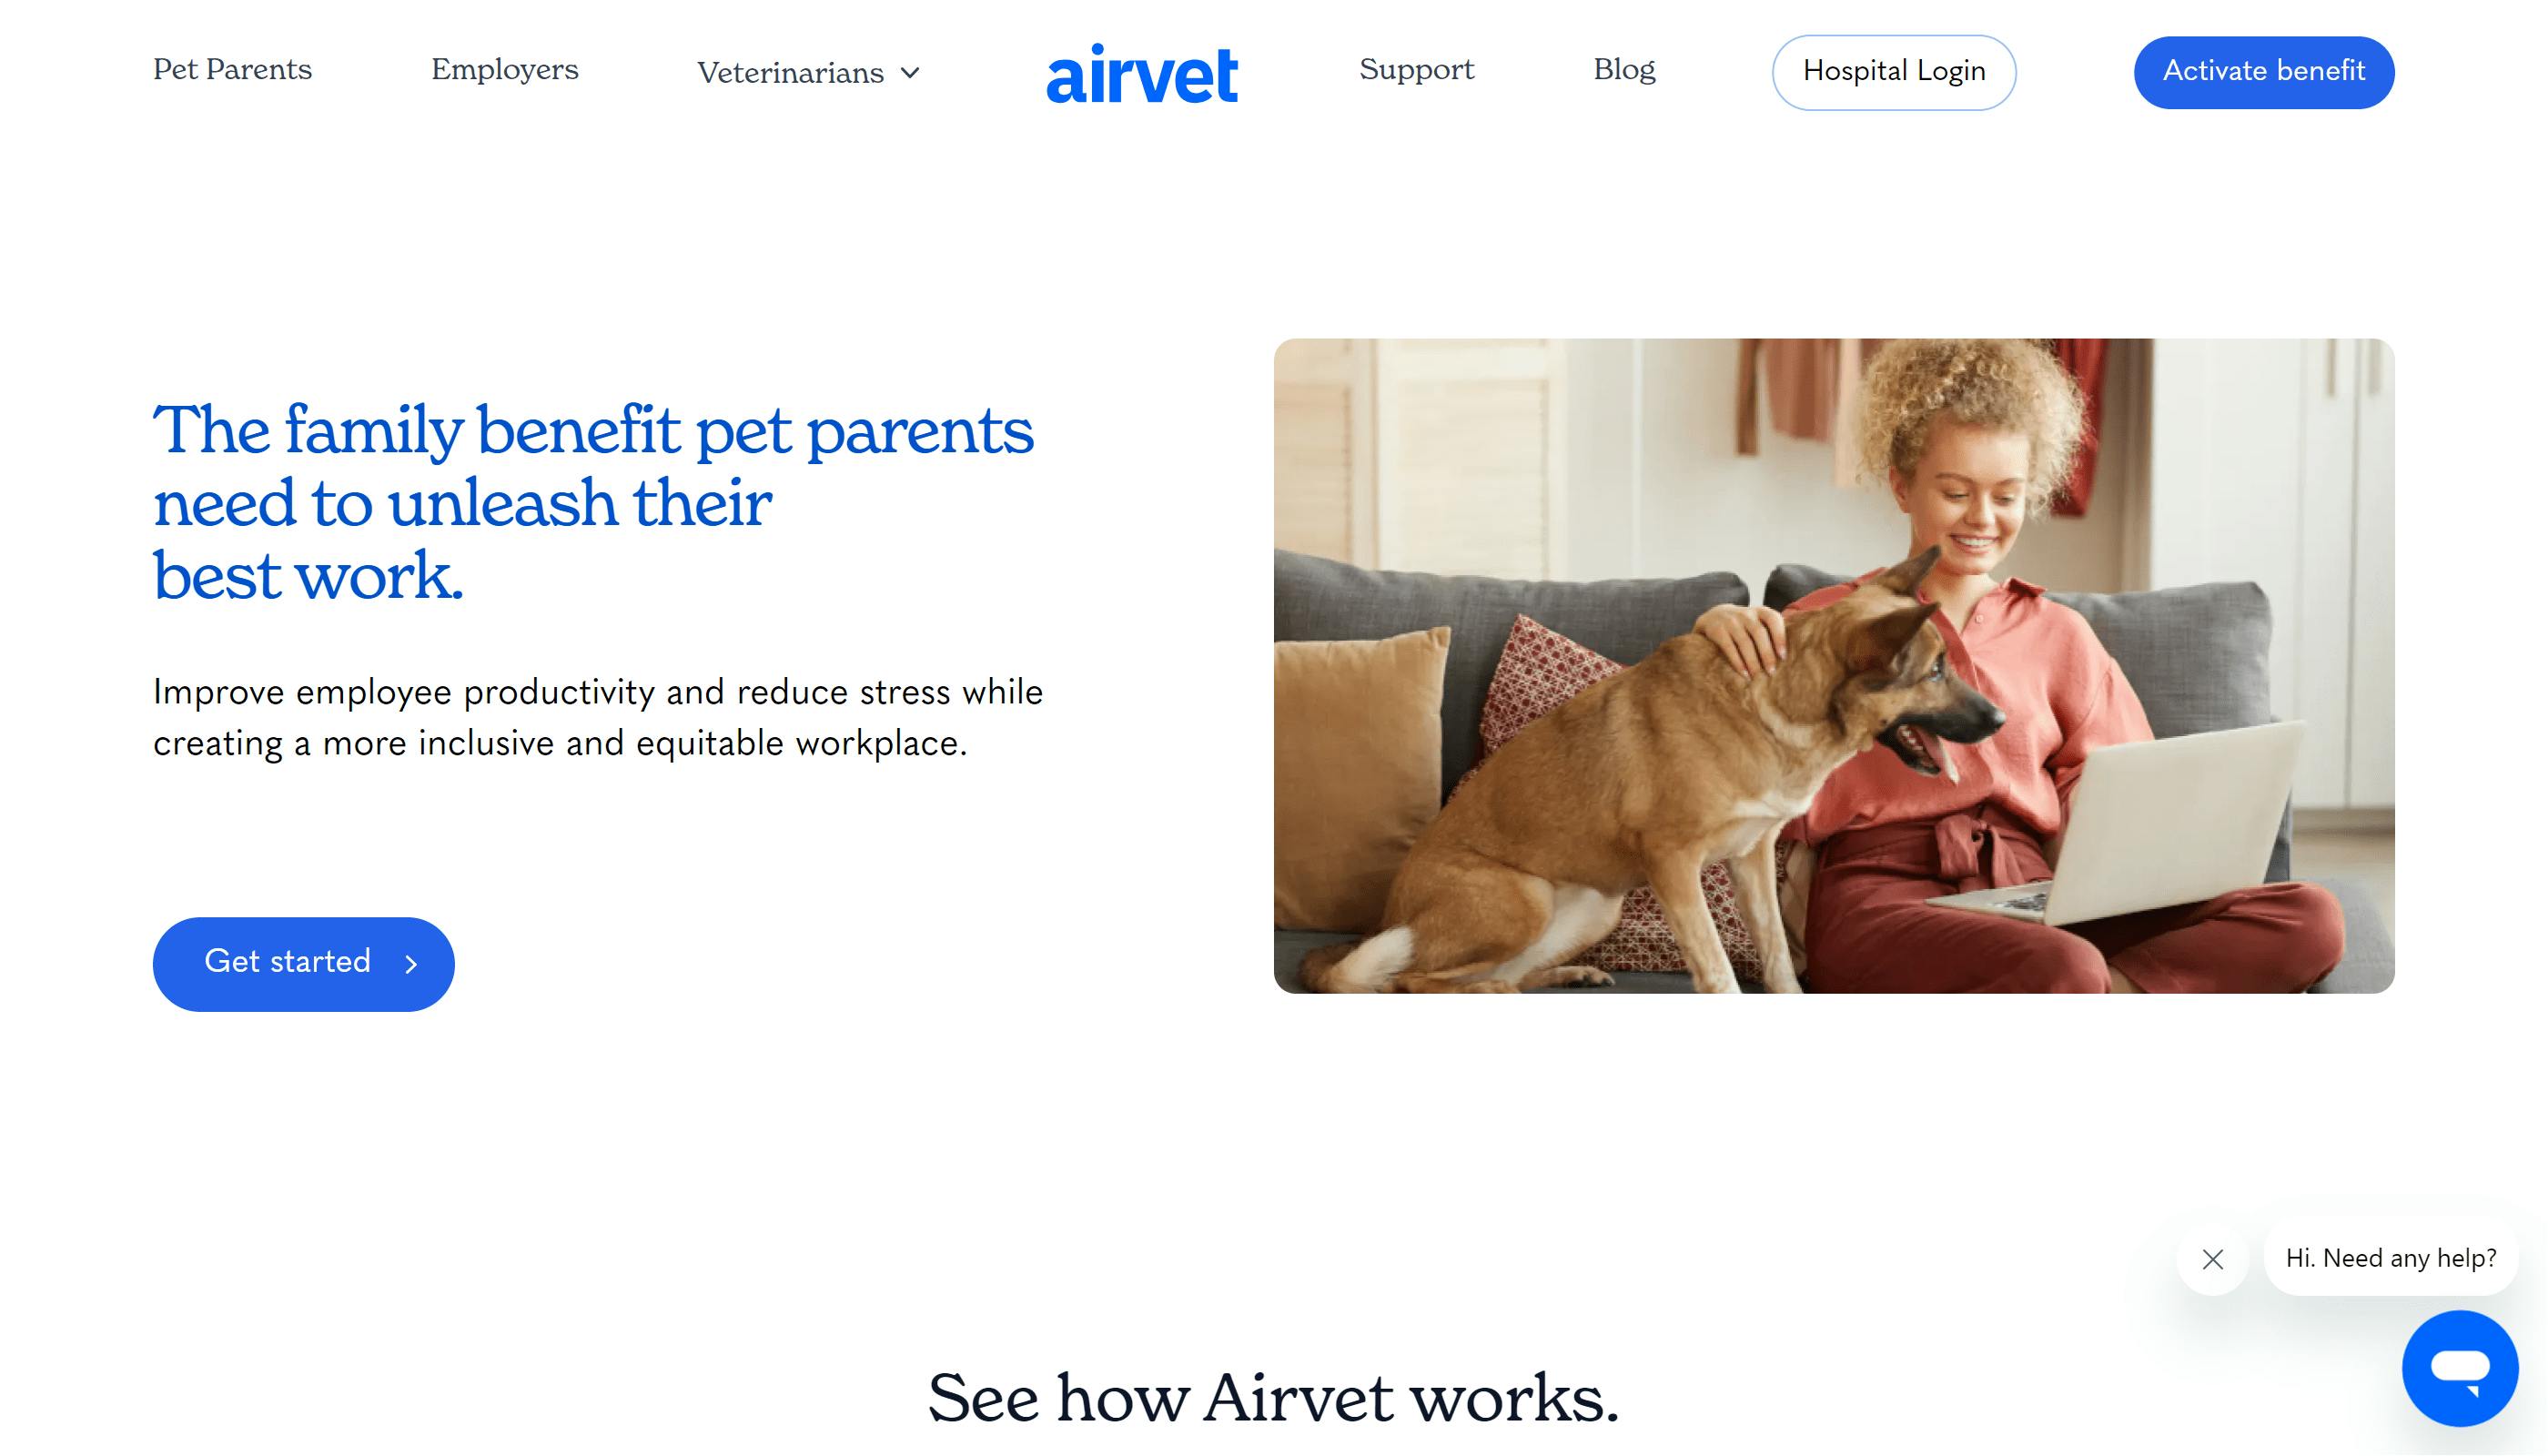 Airvet